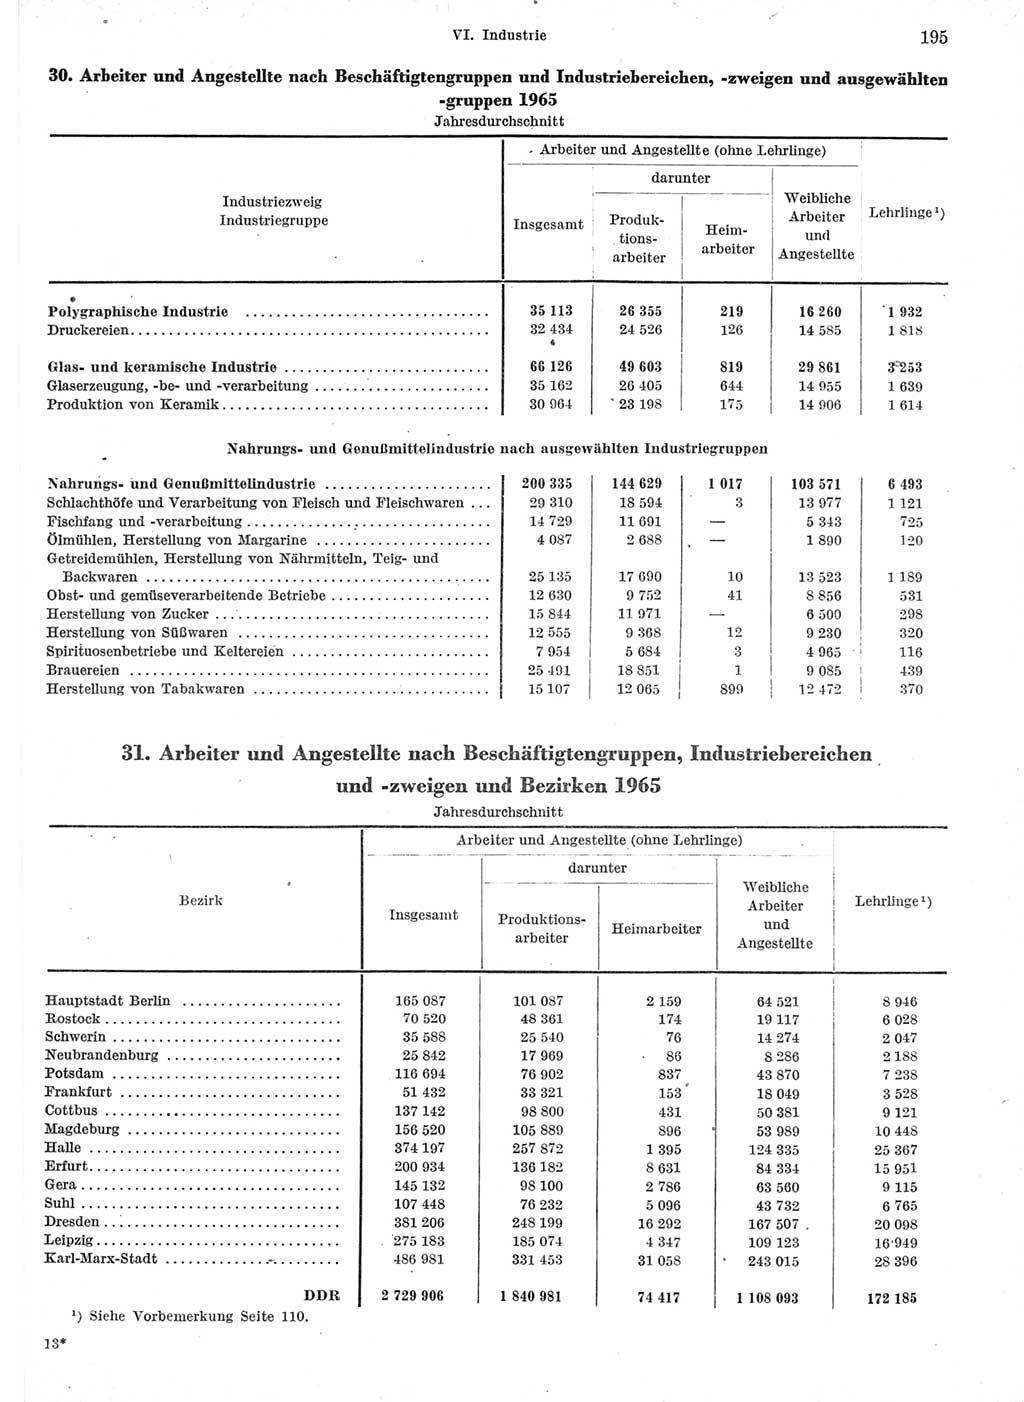 Statistisches Jahrbuch der Deutschen Demokratischen Republik (DDR) 1966, Seite 195 (Stat. Jb. DDR 1966, S. 195)